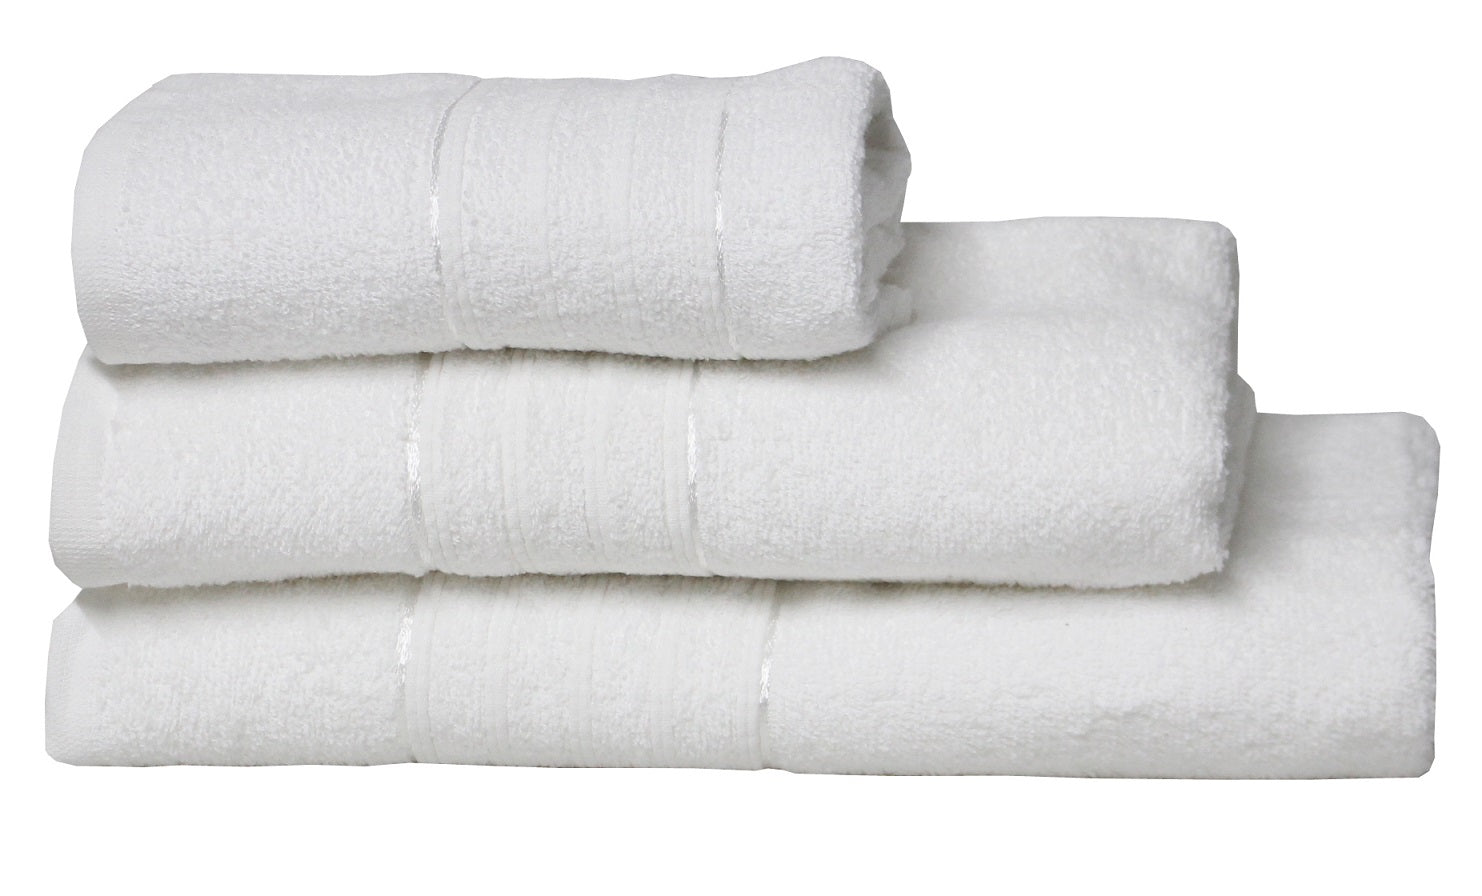 White Luxury Designer 100% Cotton Egyptian Bath Sheet